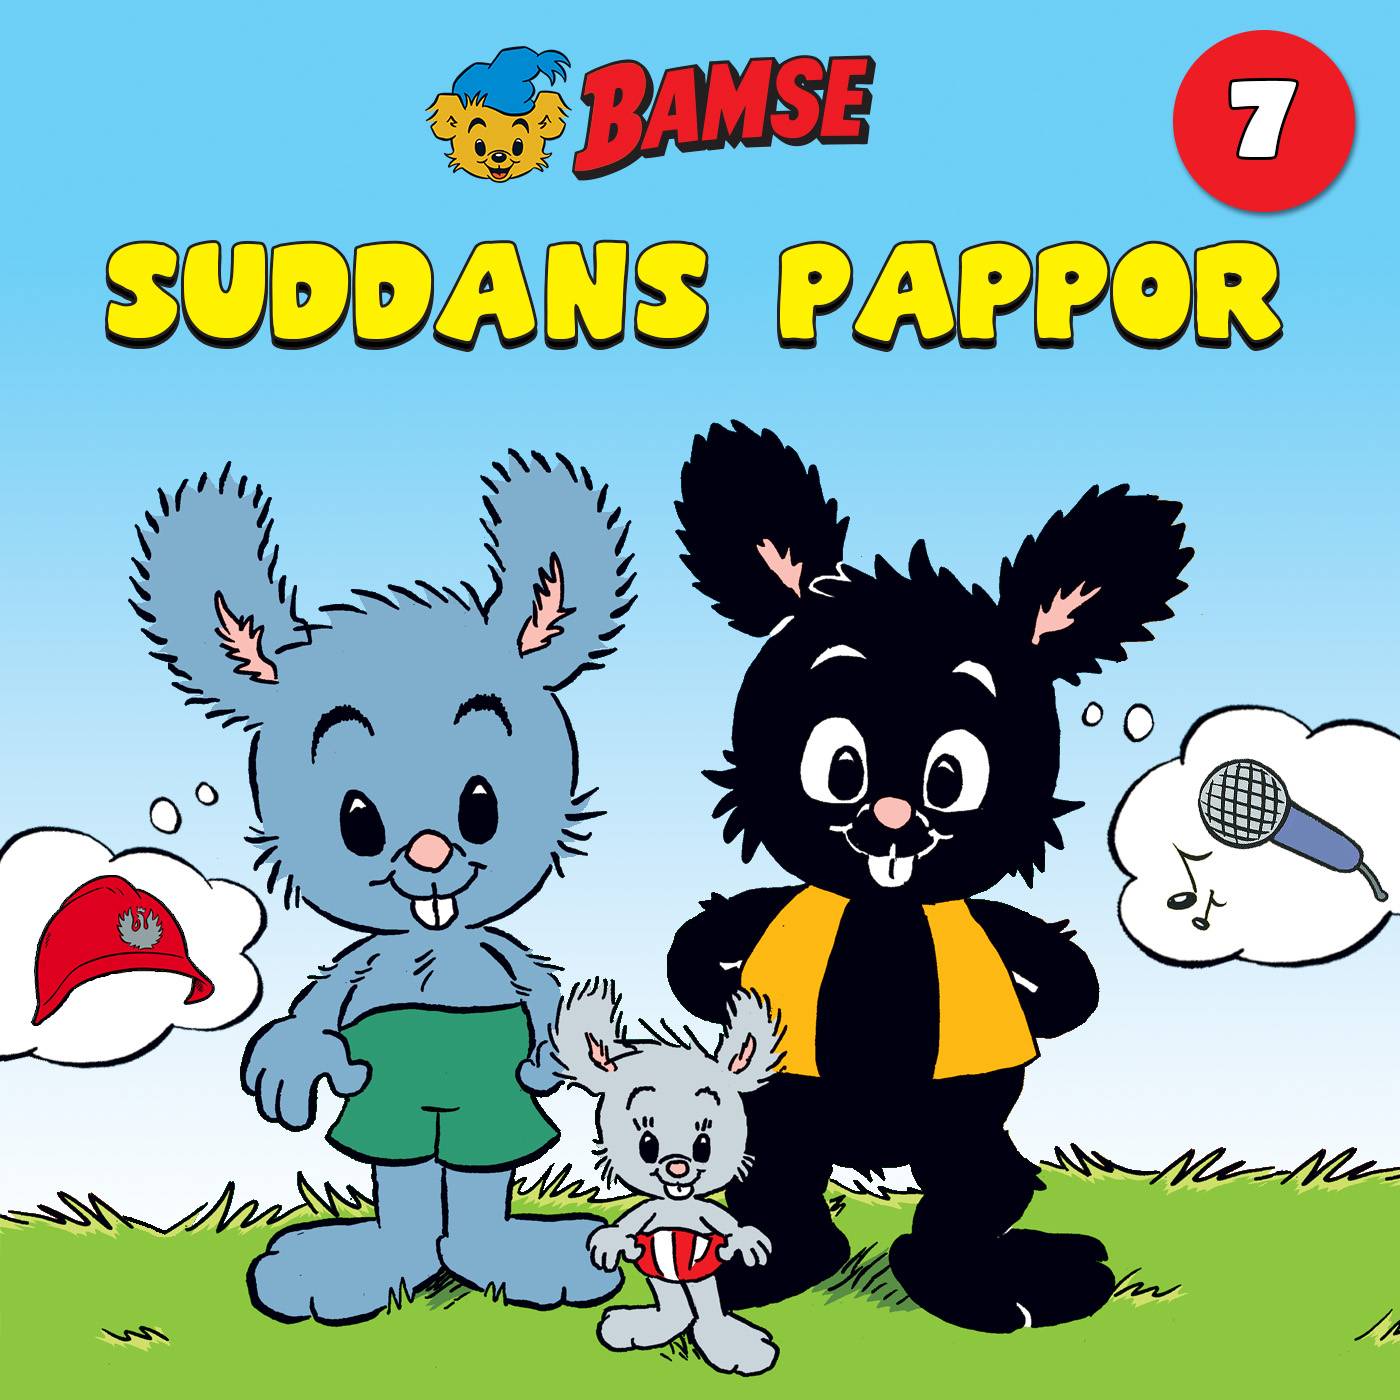 Bamse – Suddans pappor kapitel 7, En överraskning!